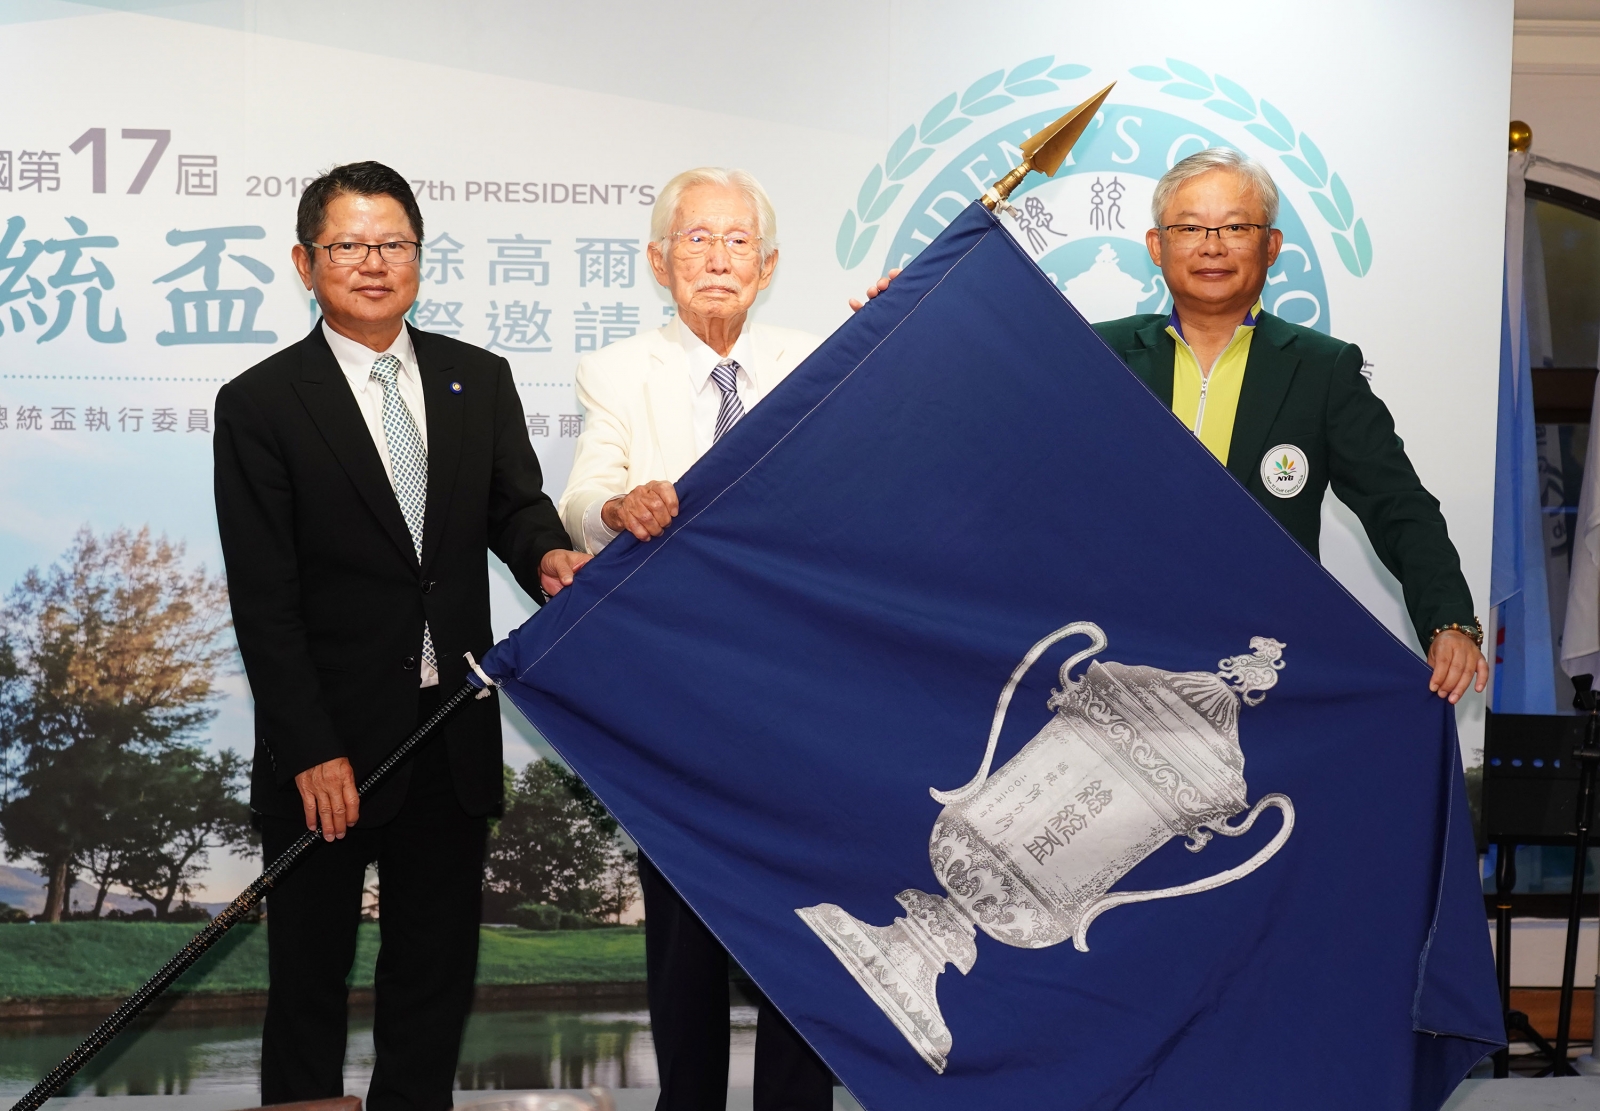 左起大會會長陳茂仁將會旗歸還給創會會長辜寬敏再交給下屆主辦南一球場董事長蔡君山。